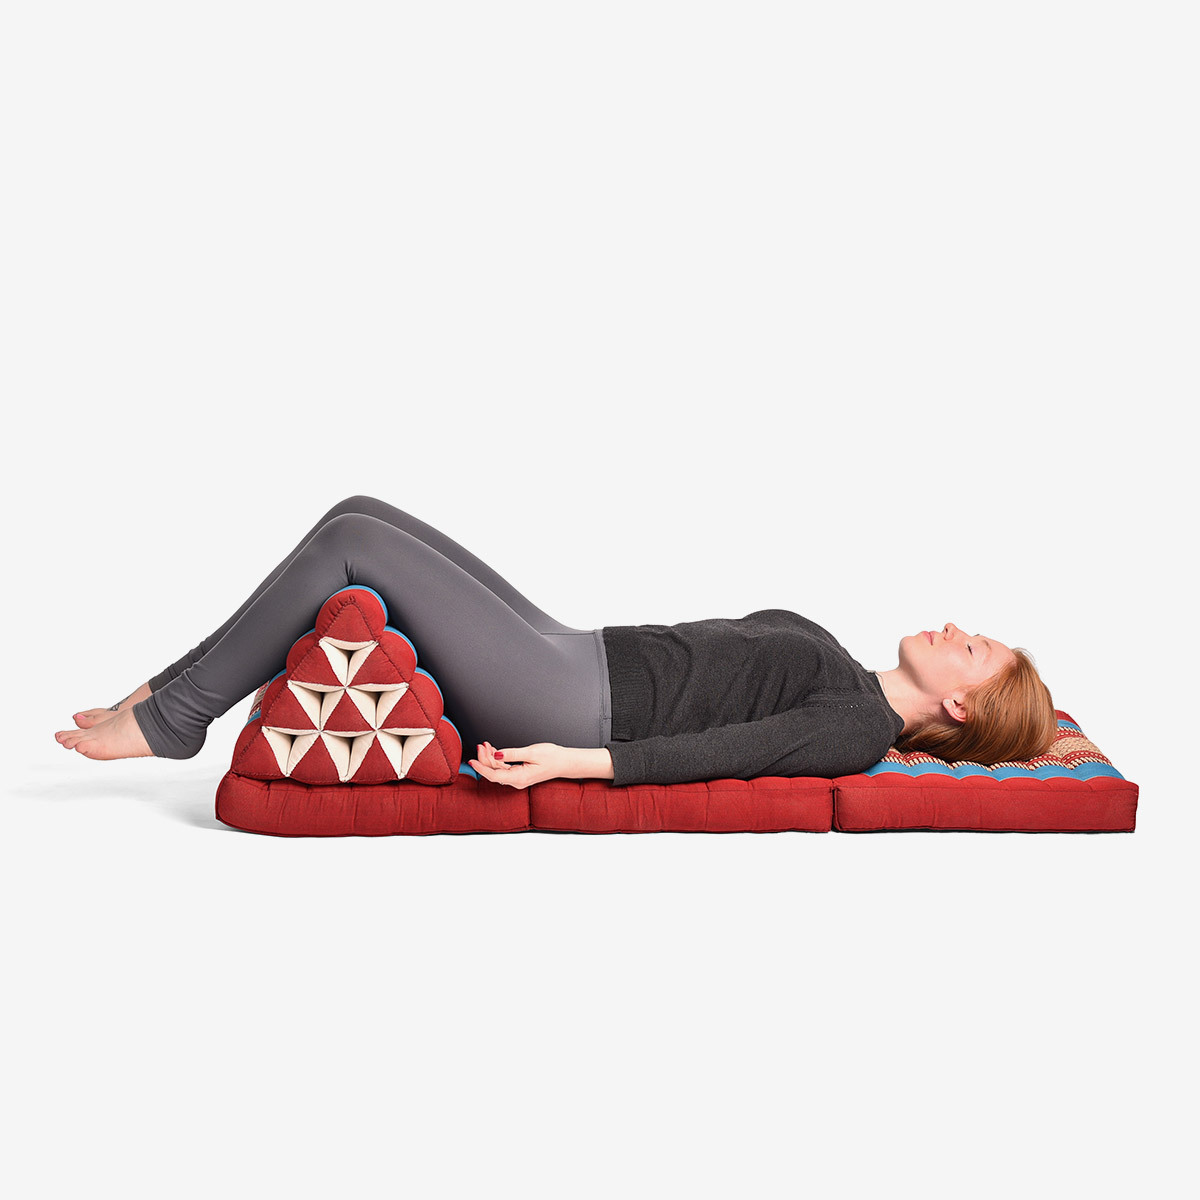 Zafuko Large Foldable Meditation and Yoga Cushion - Red/Blue